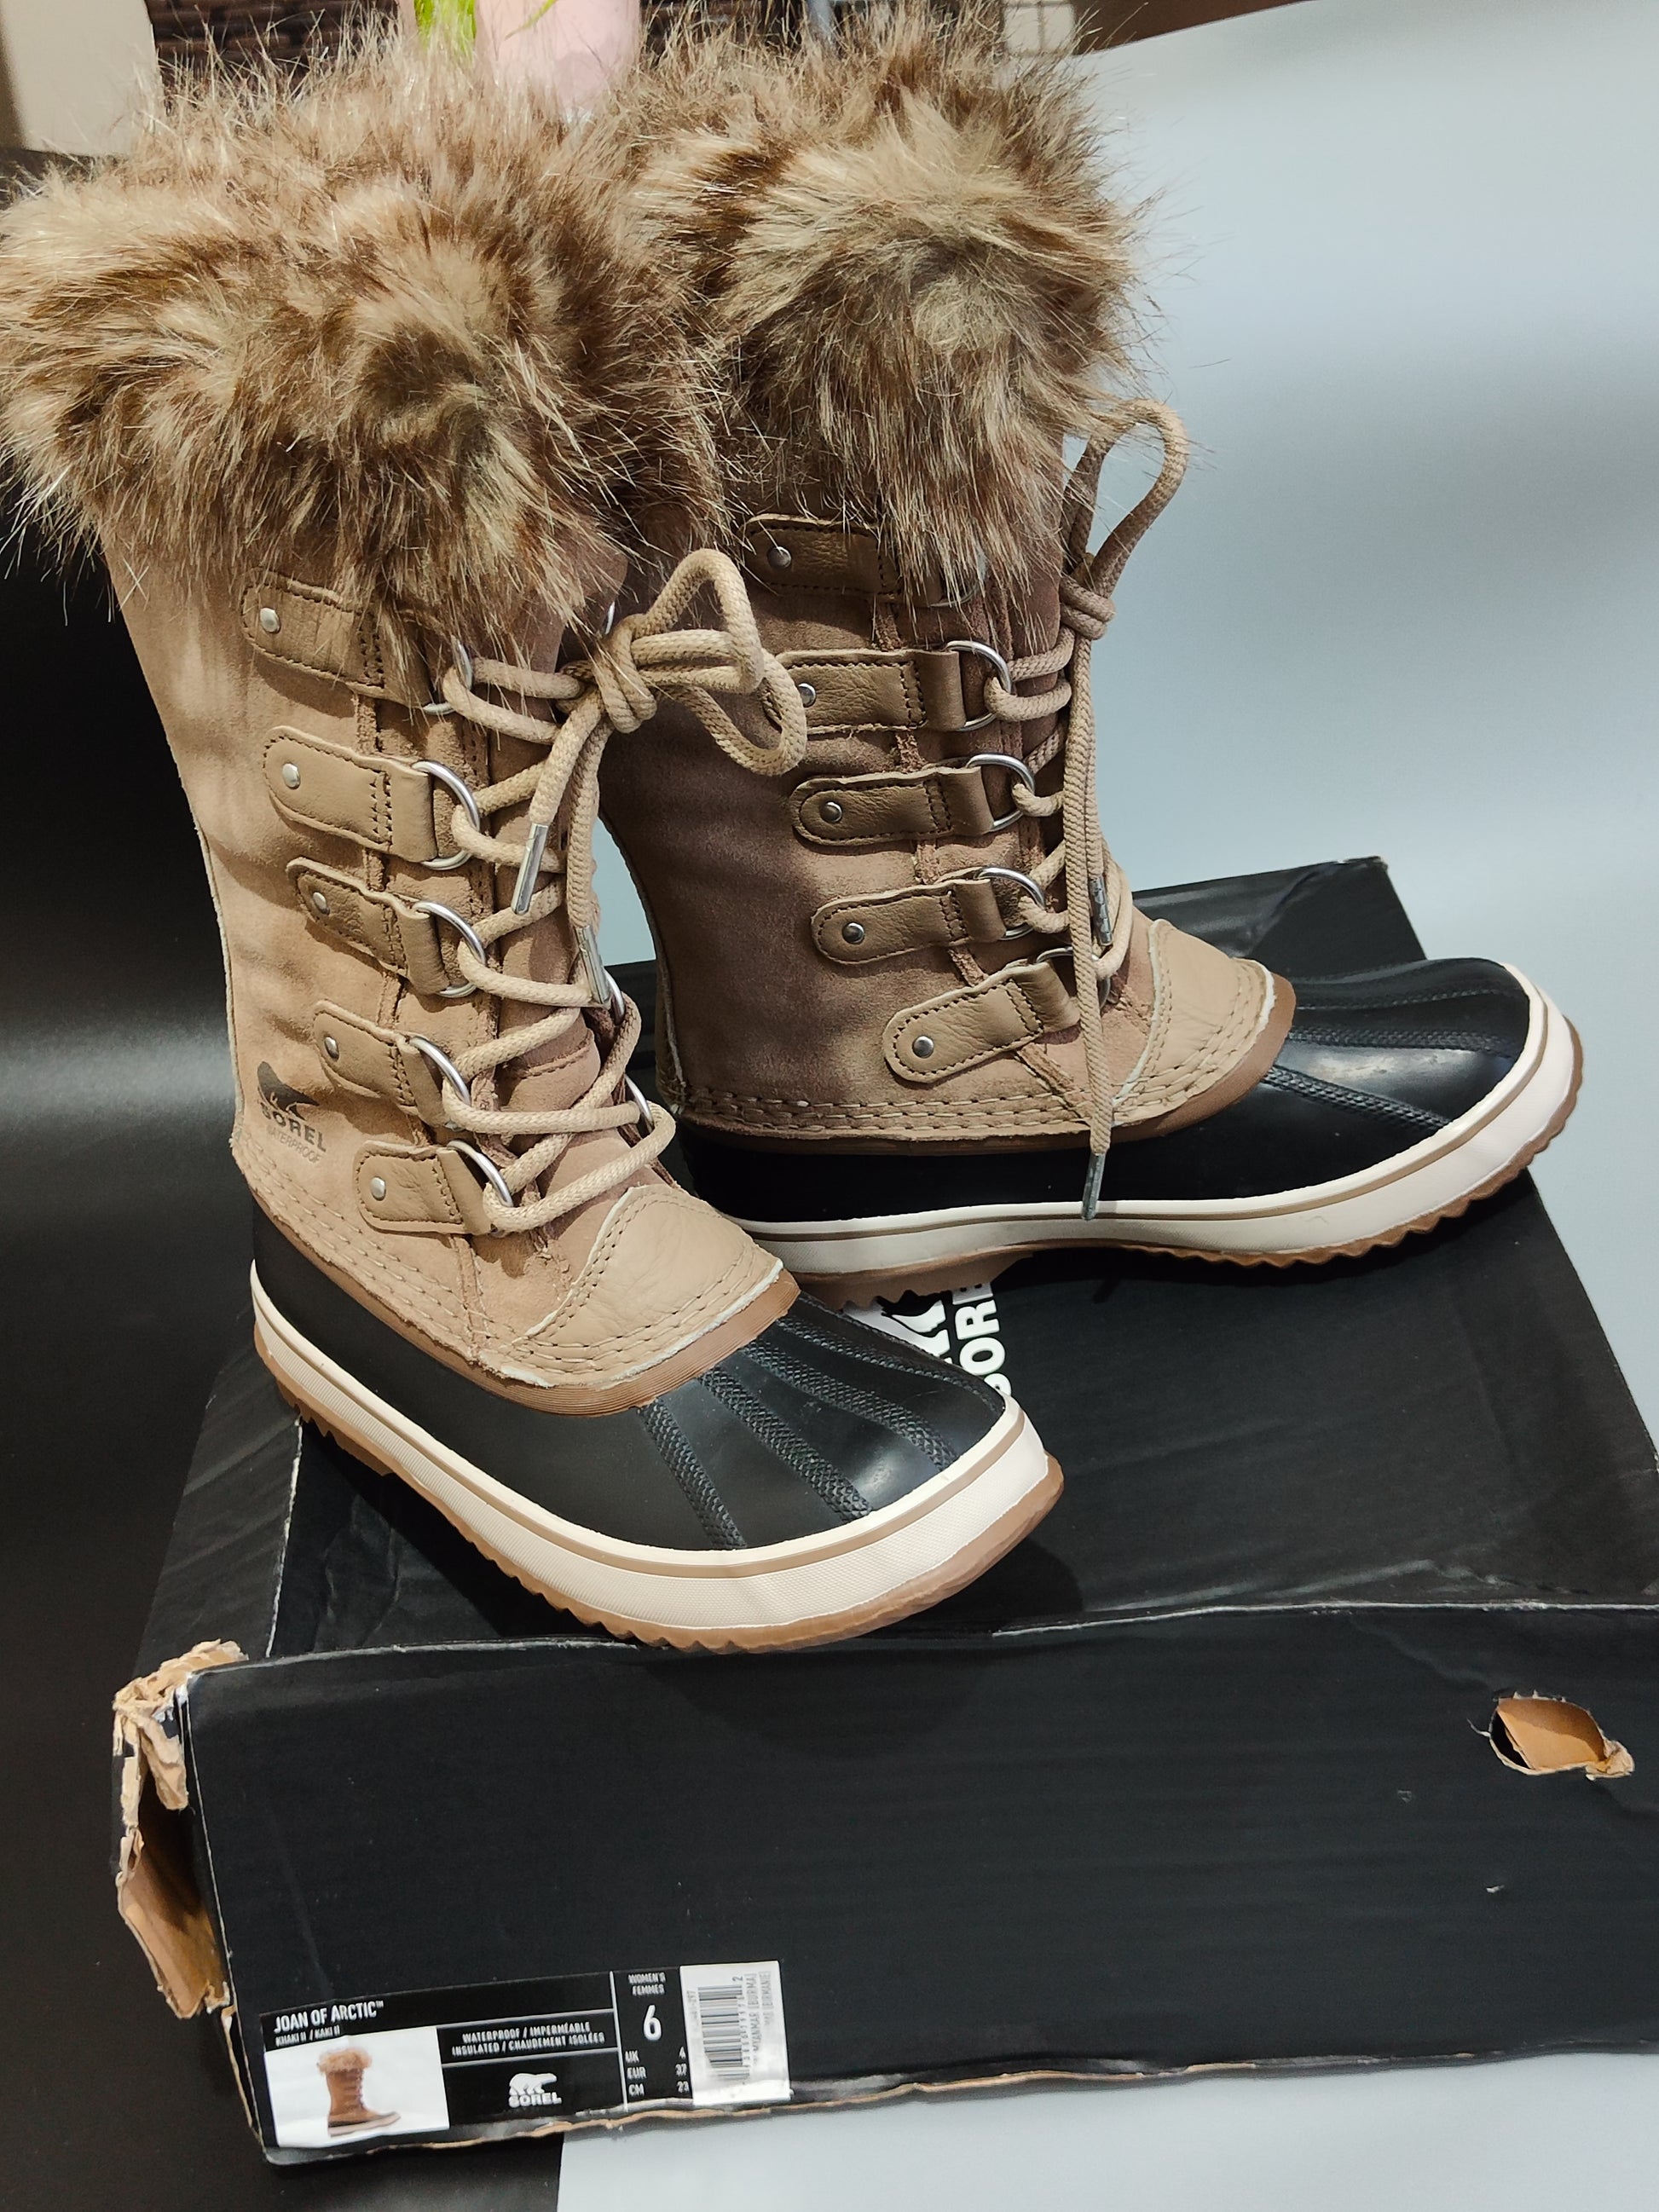 Sorel Women's Leather Waterproof Winter Boots